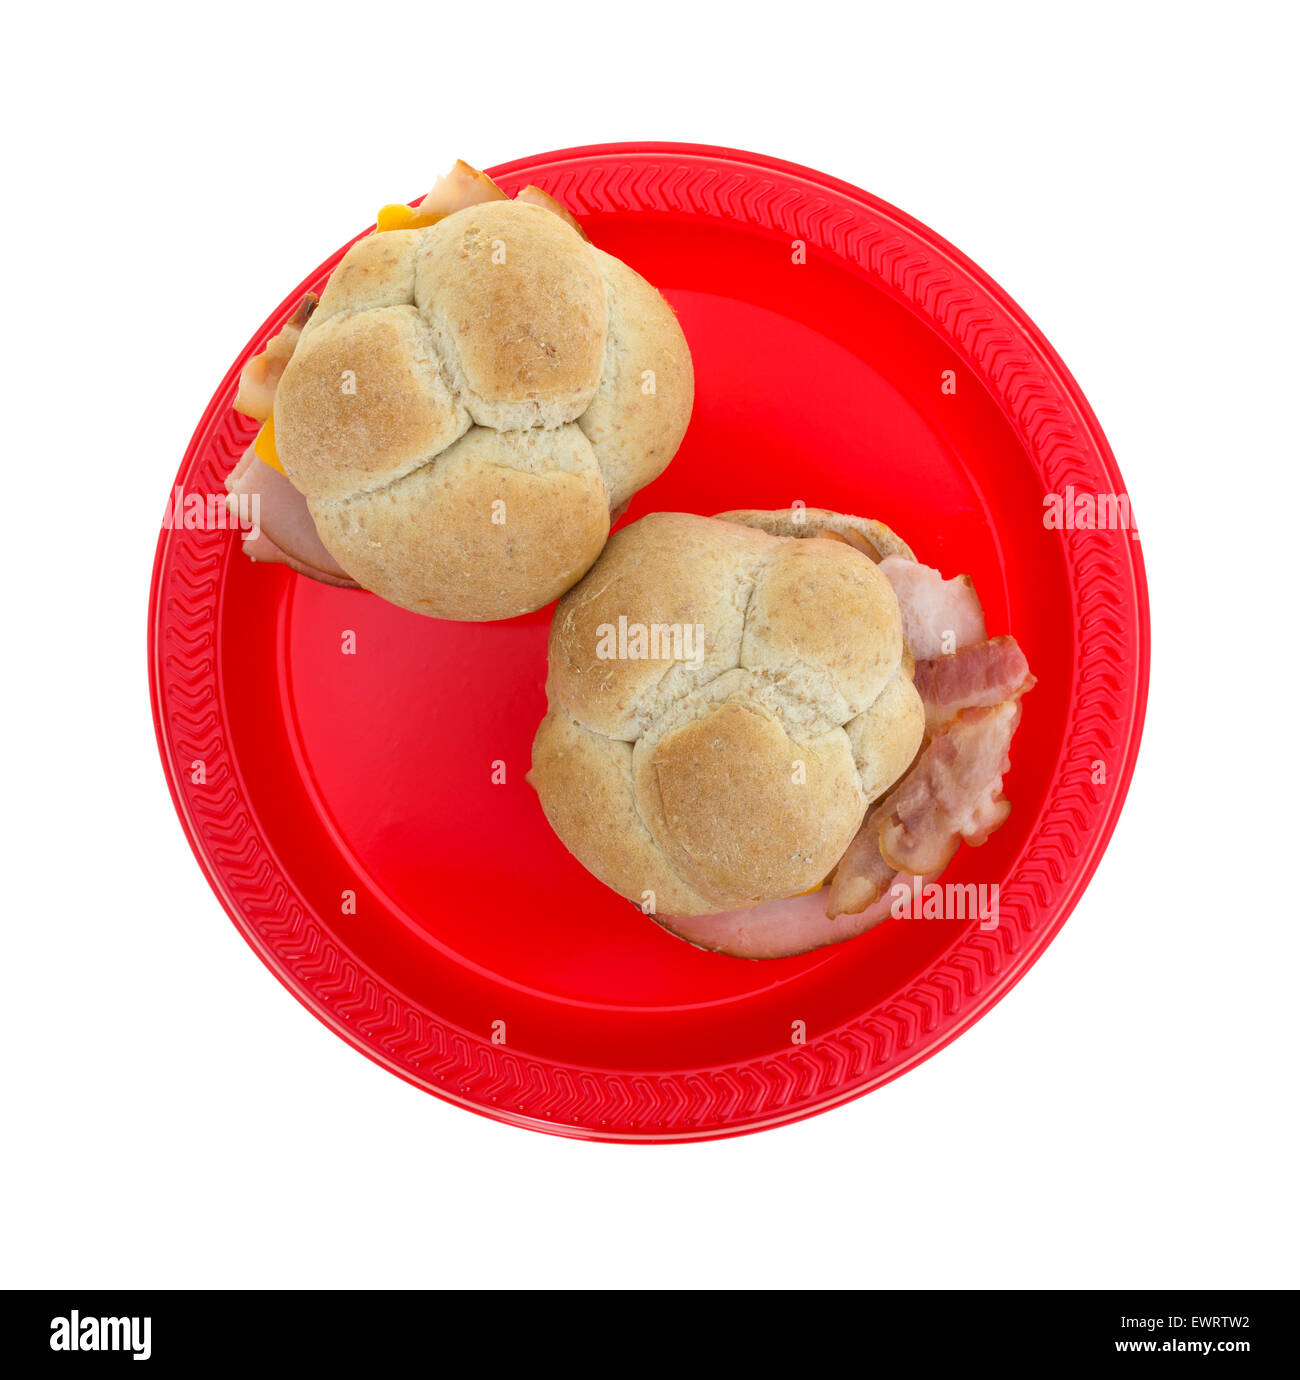 Draufsicht der zwei kleinen Truthahn-Sandwiches mit Speck und Cheddar Käse auf Weizen Brötchen auf einem roten Picknick Teller. Stockfoto